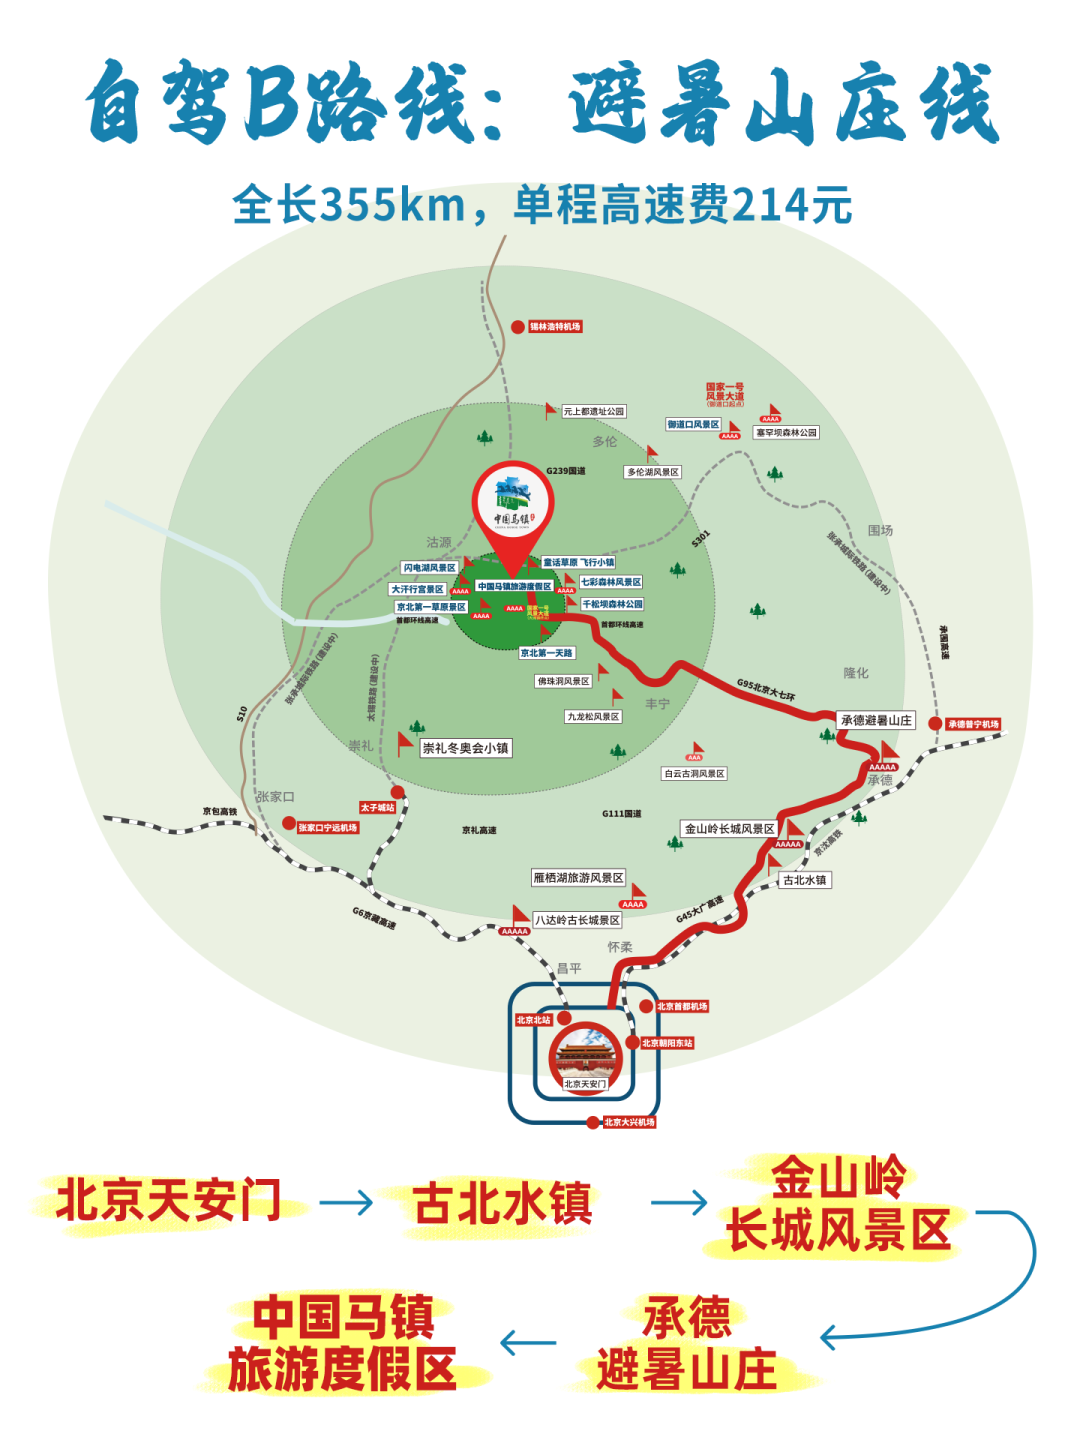 共有三条路线选择就可以自驾到达我们中国马镇啦北京